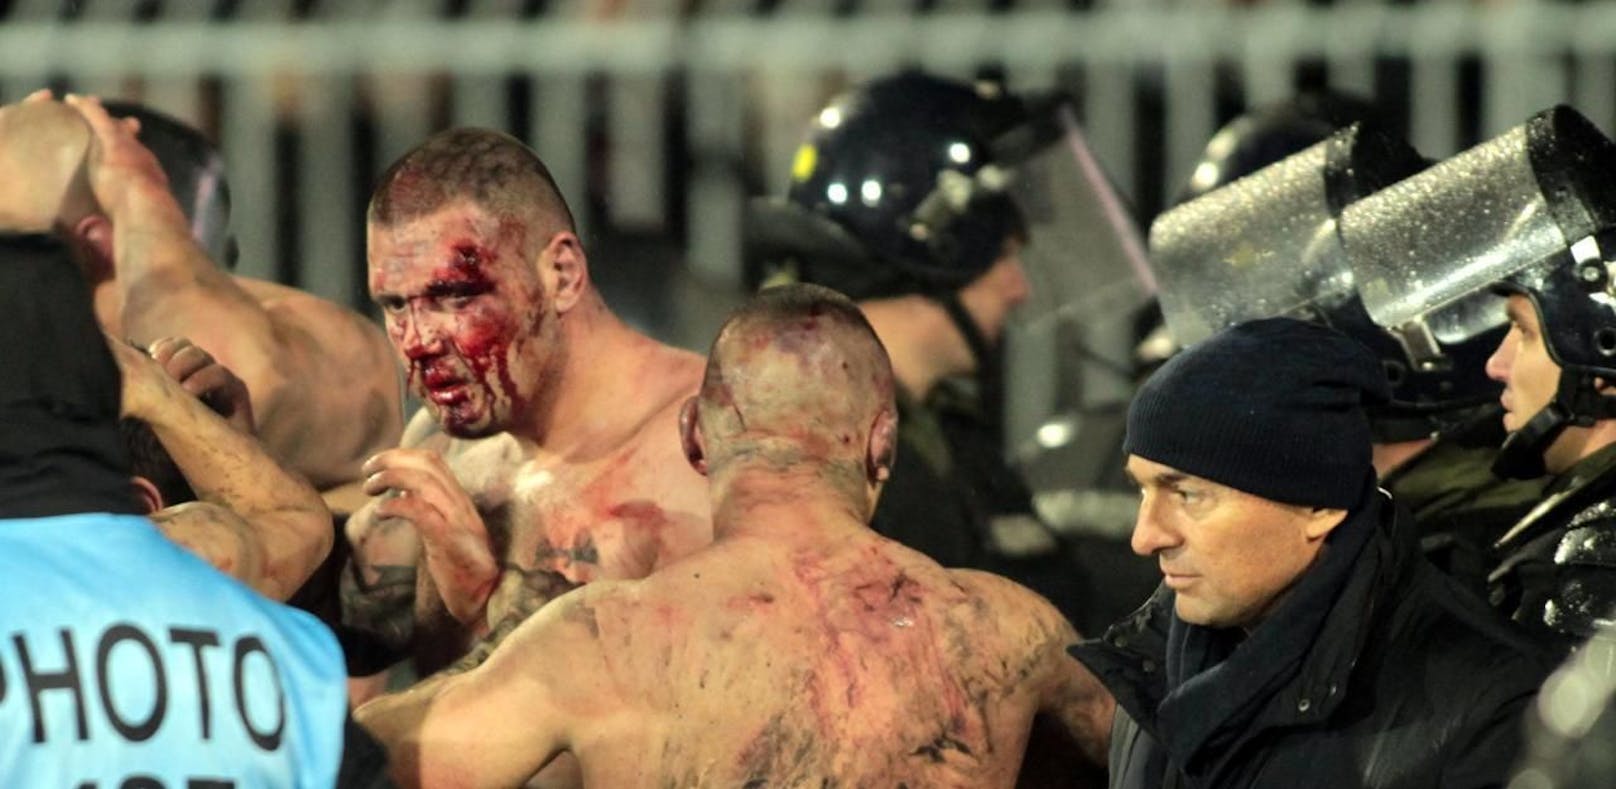 Belgrad-Hooligans gaben Anleitung für Schlägerei